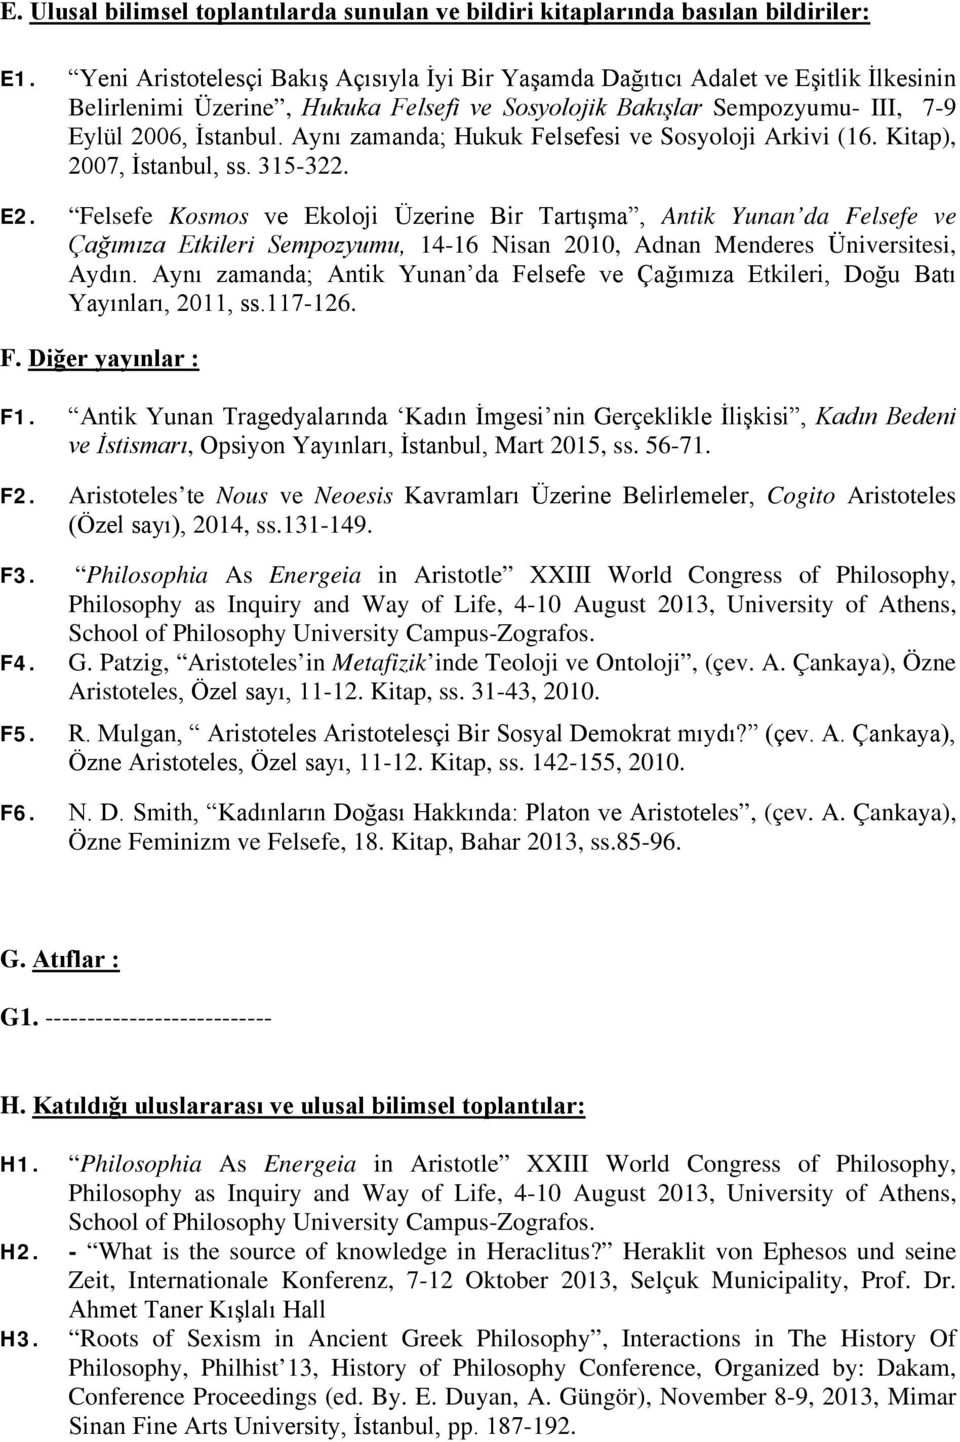 Aynı zamanda; Hukuk Felsefesi ve Sosyoloji Arkivi (16. Kitap), 2007, İstanbul, ss. 315-322. E2.